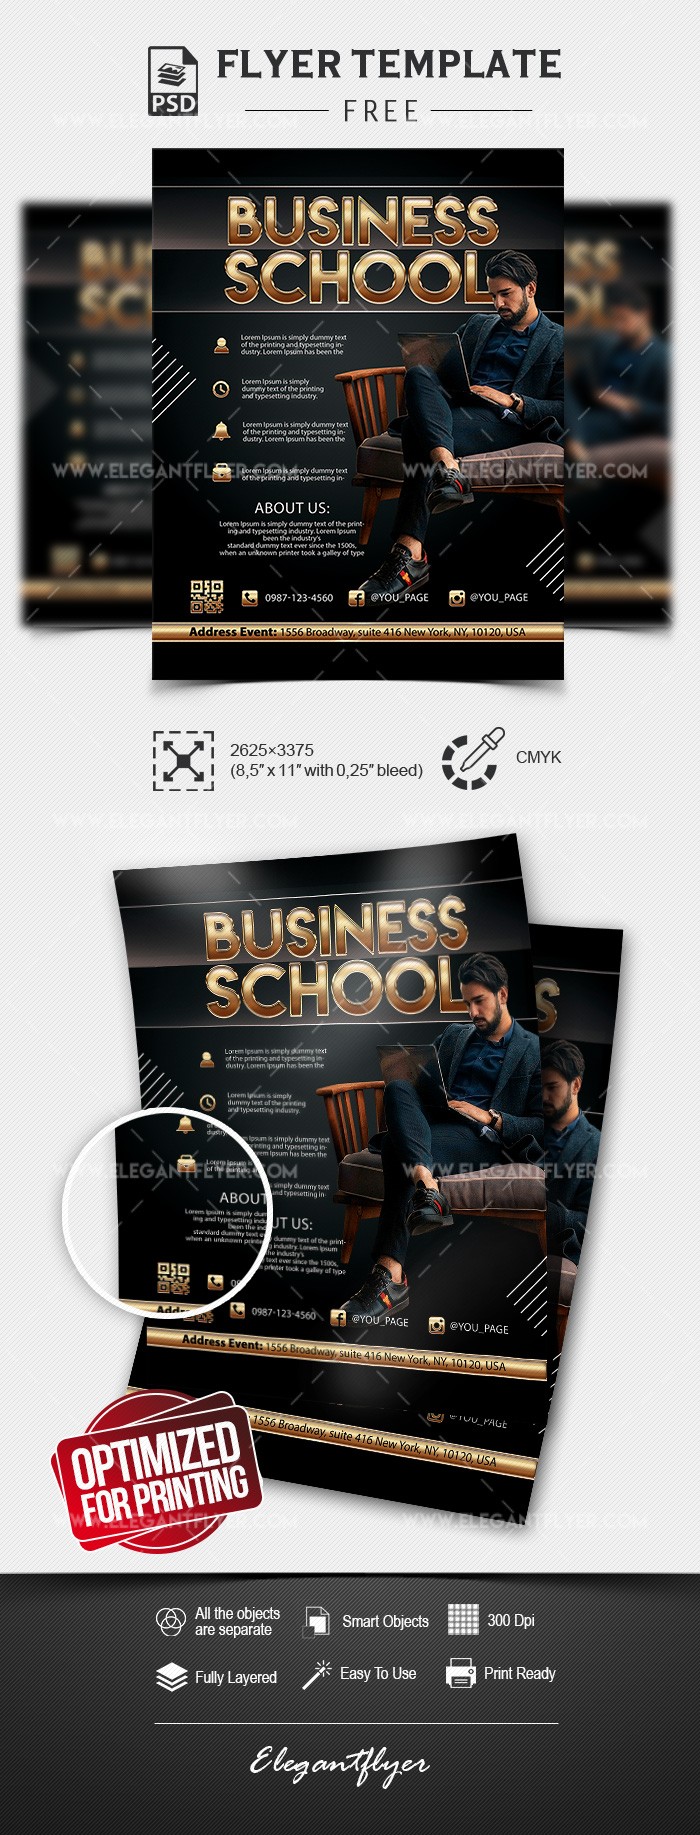 Business School by ElegantFlyer